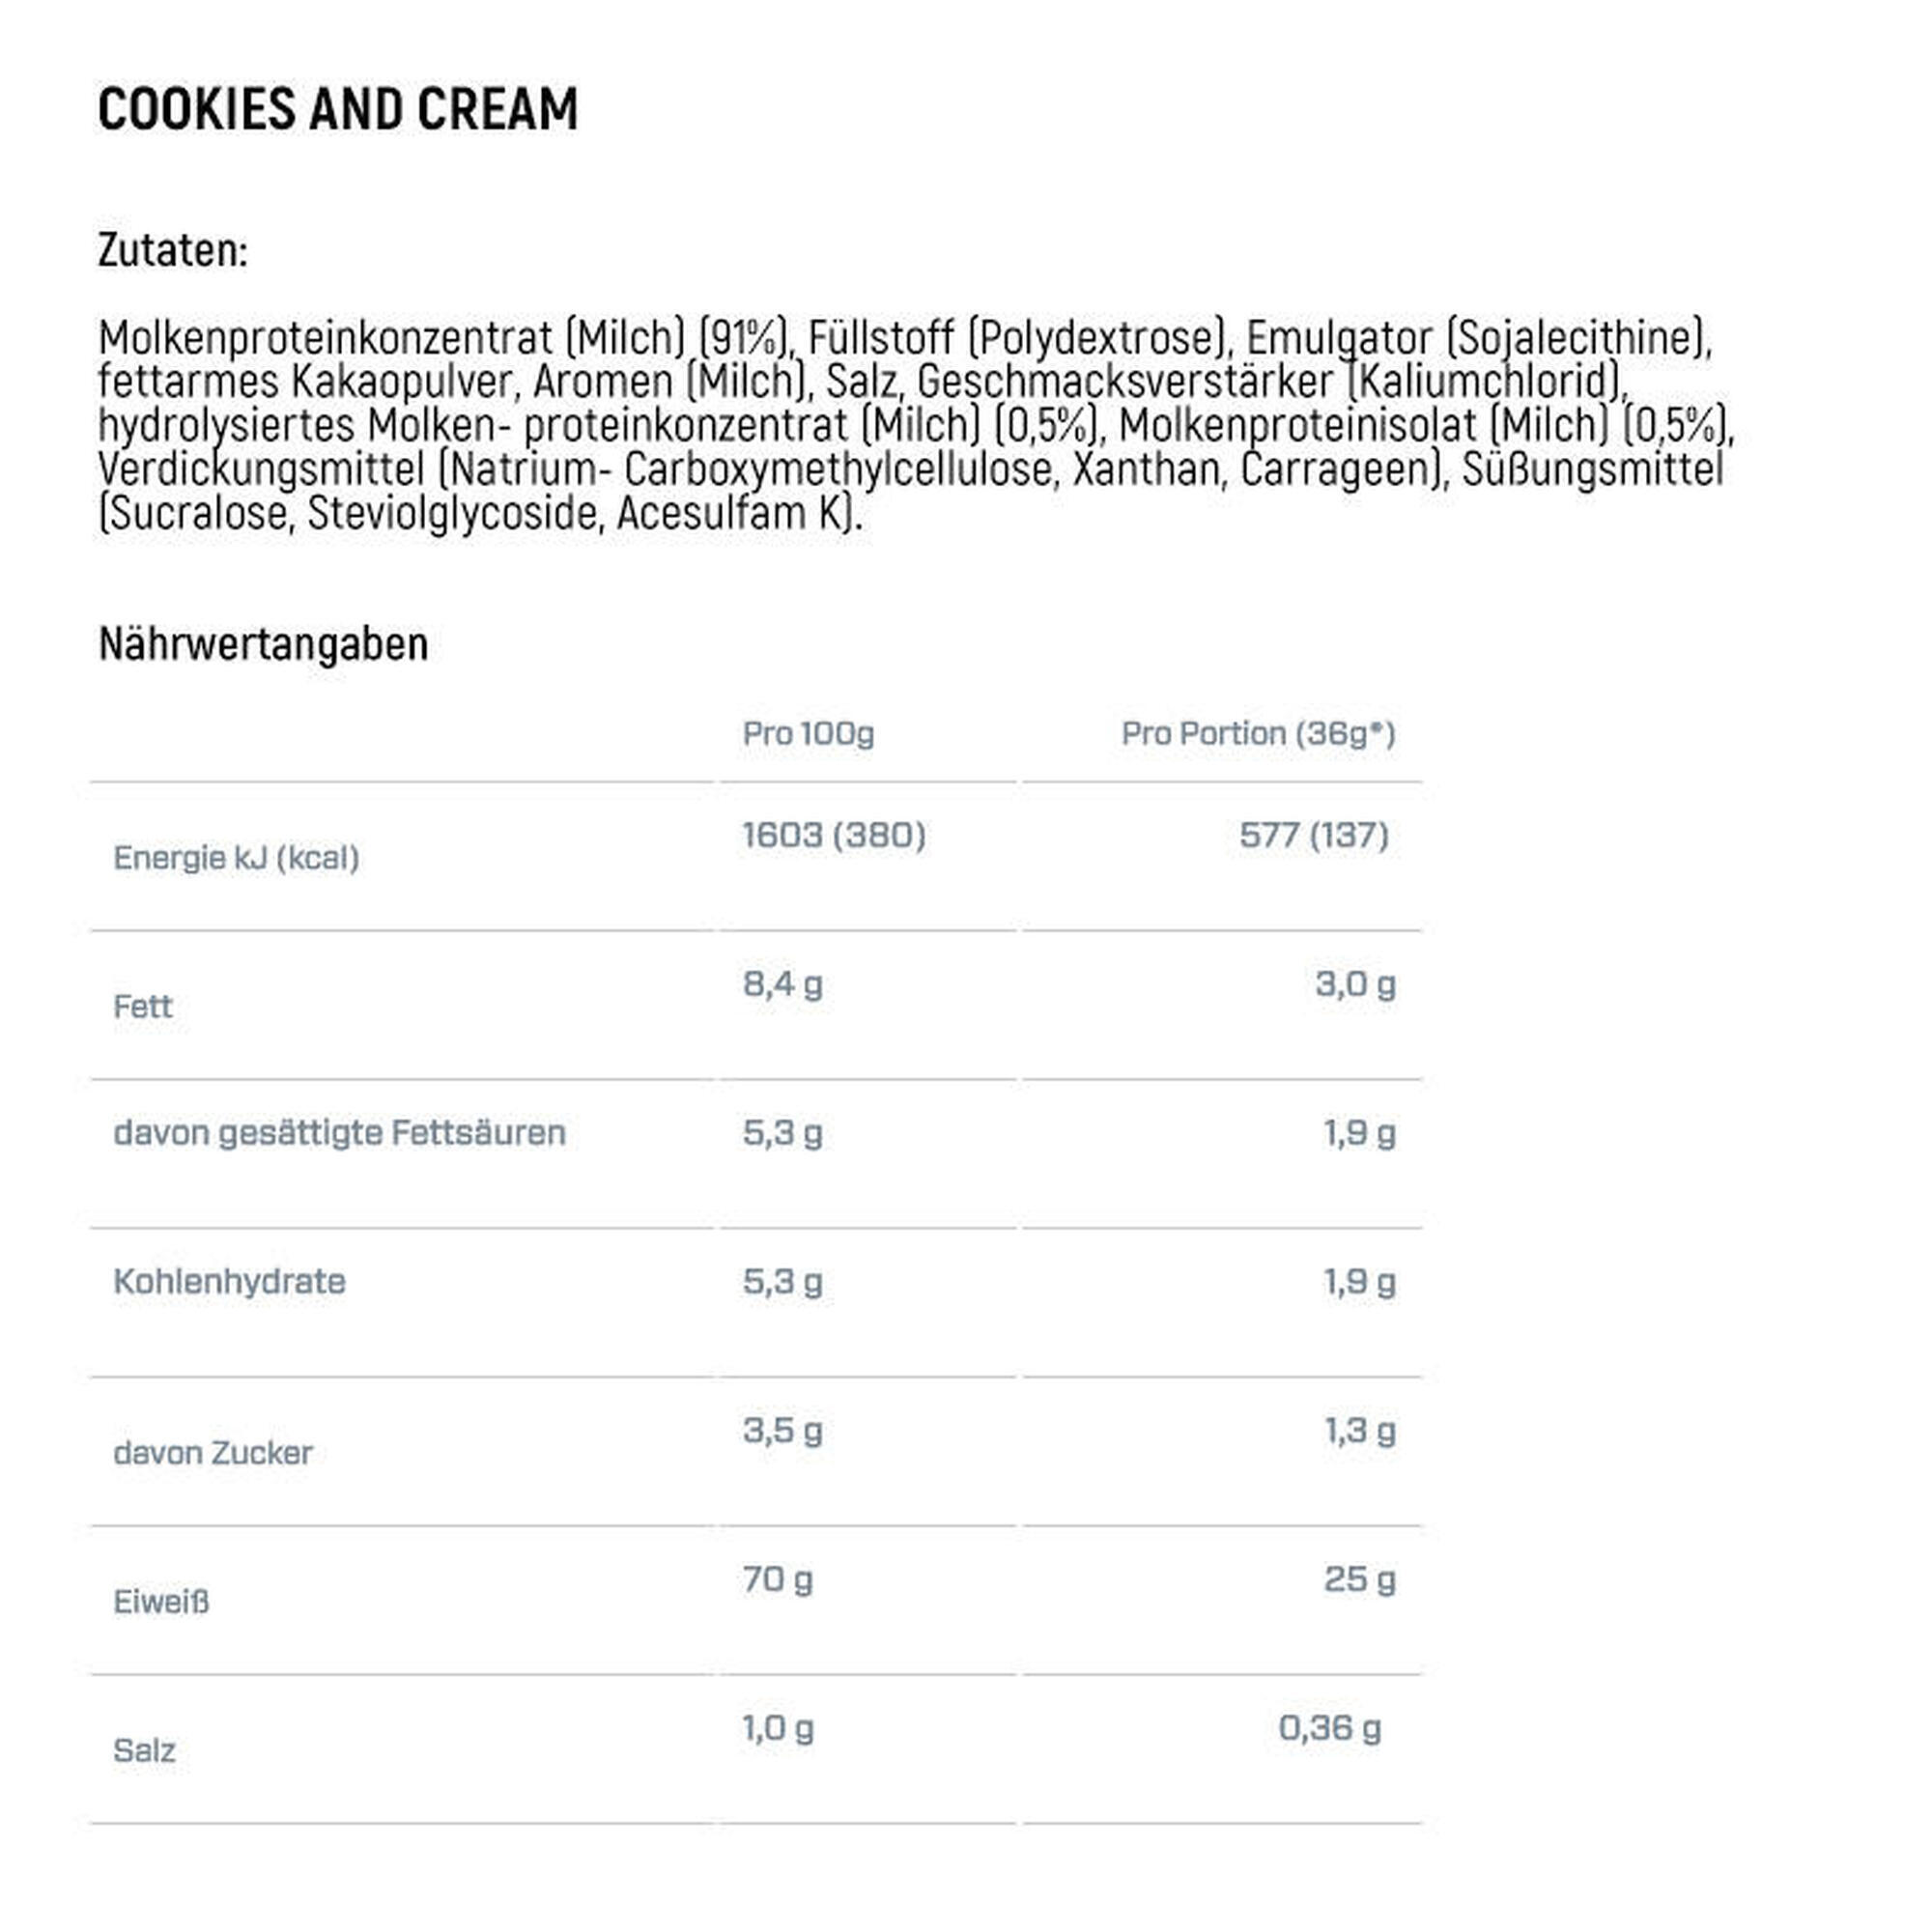 Dymatize Elite 100% Whey Gourmet Vanilla 2170g - High Protein Low Sugar Powder